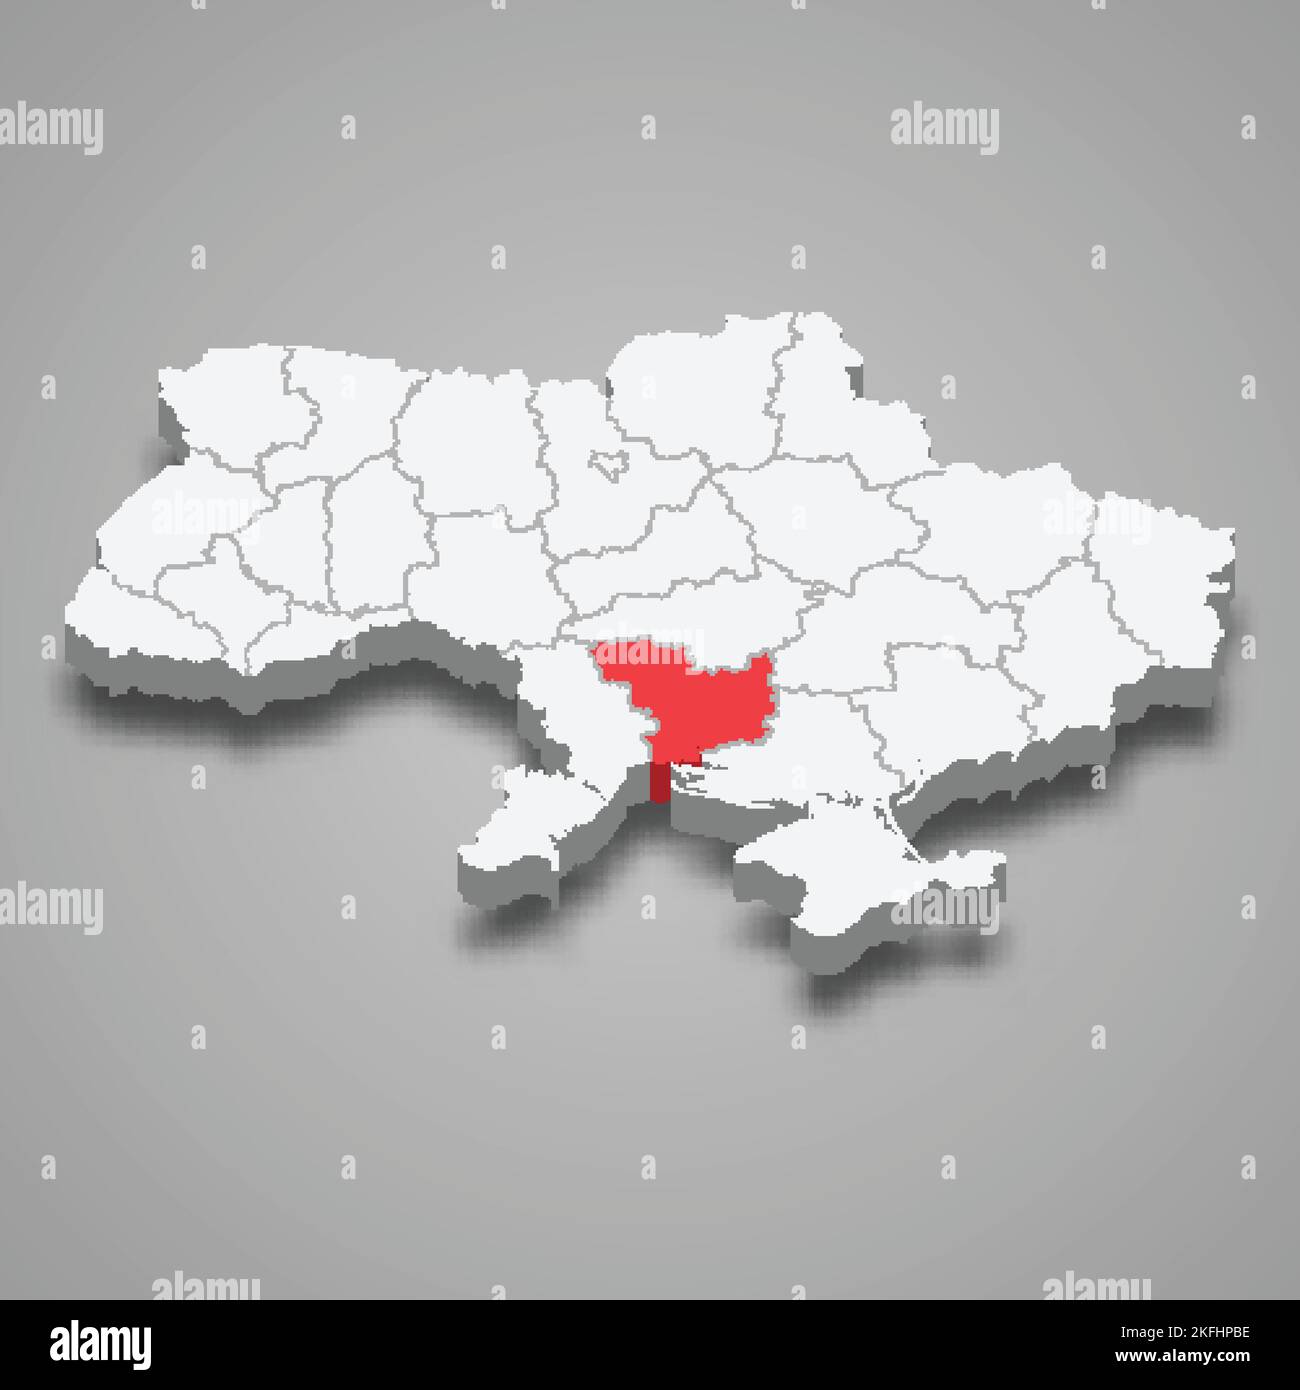 Oblast Mykolaiv. Lage der Region innerhalb der isometrischen Karte Ukraine 3D Stock Vektor